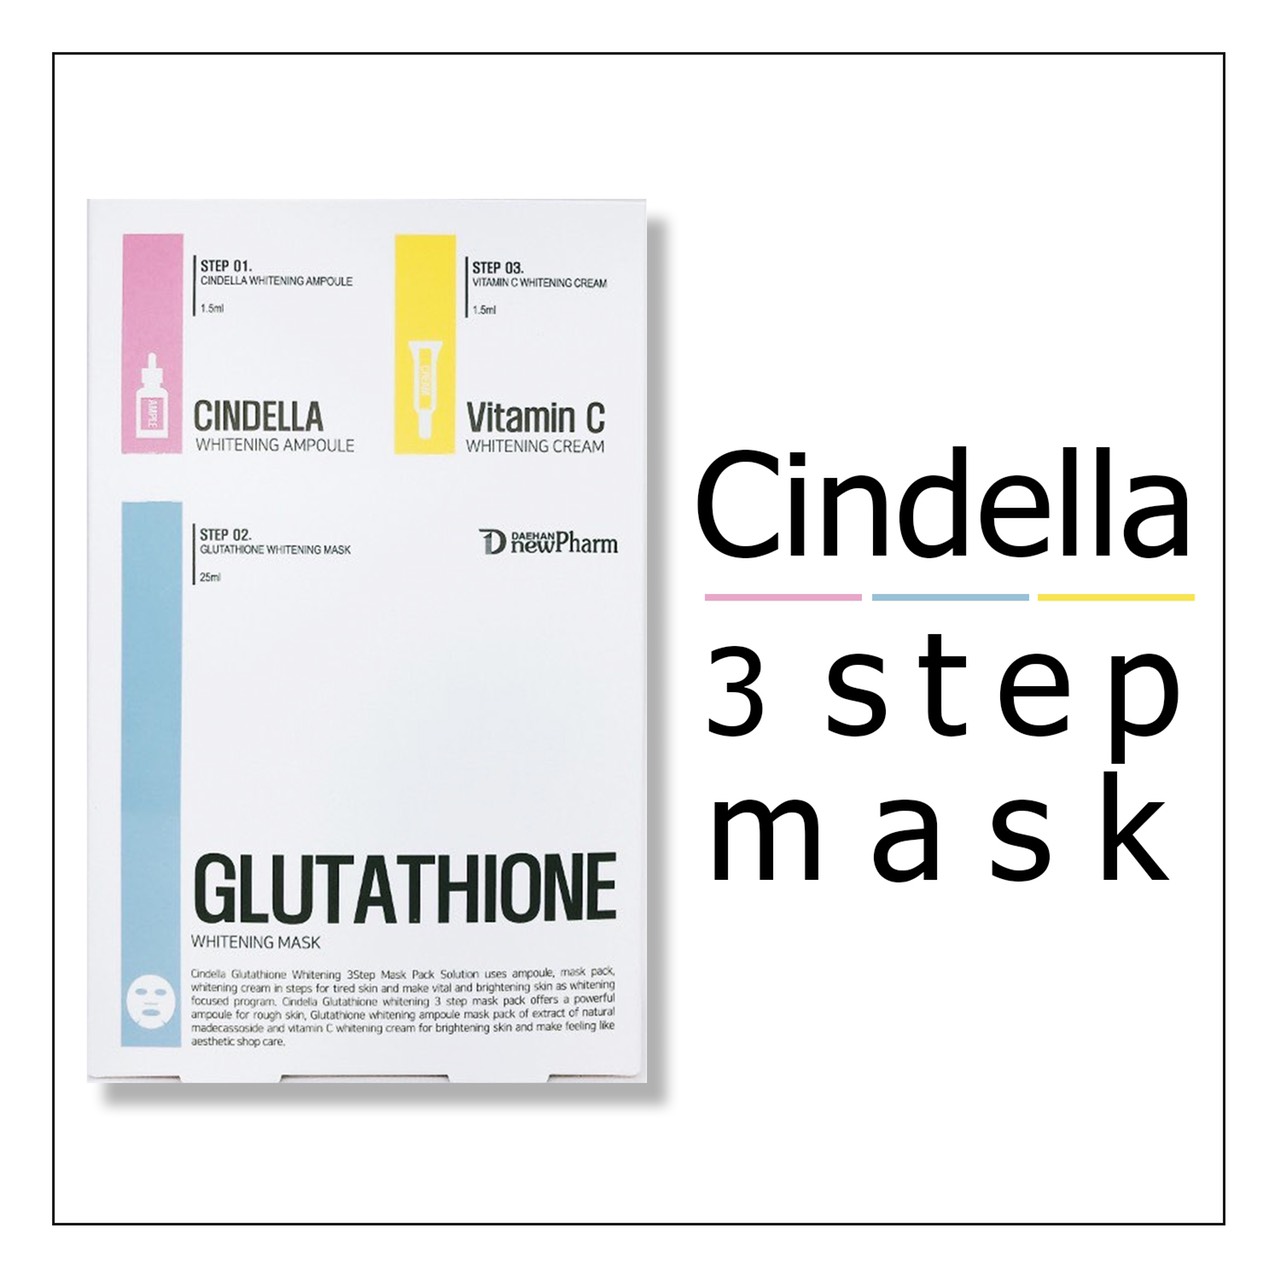 Cindella 3 Step Mask